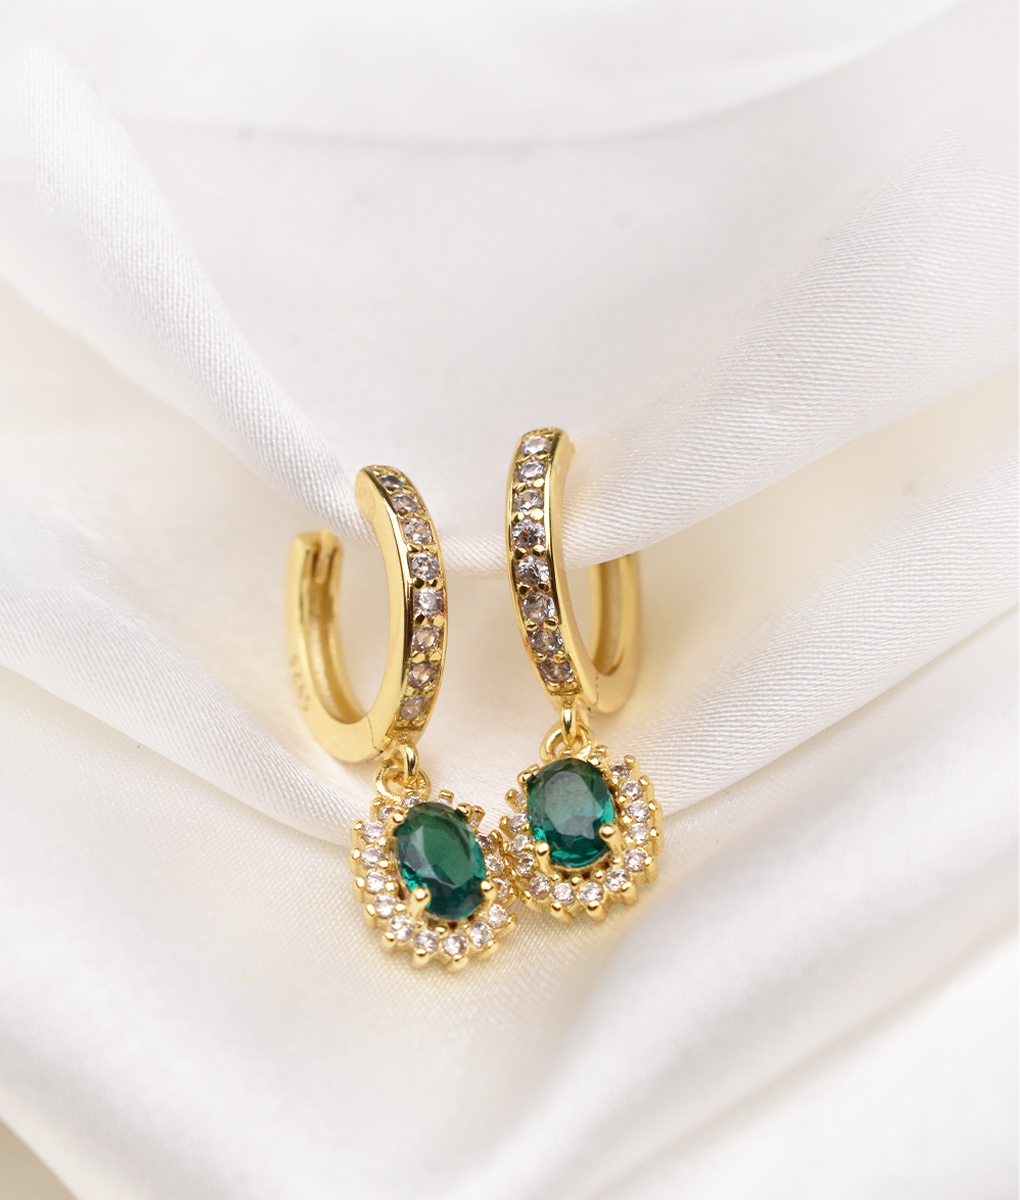 Oval emerald drop earrings